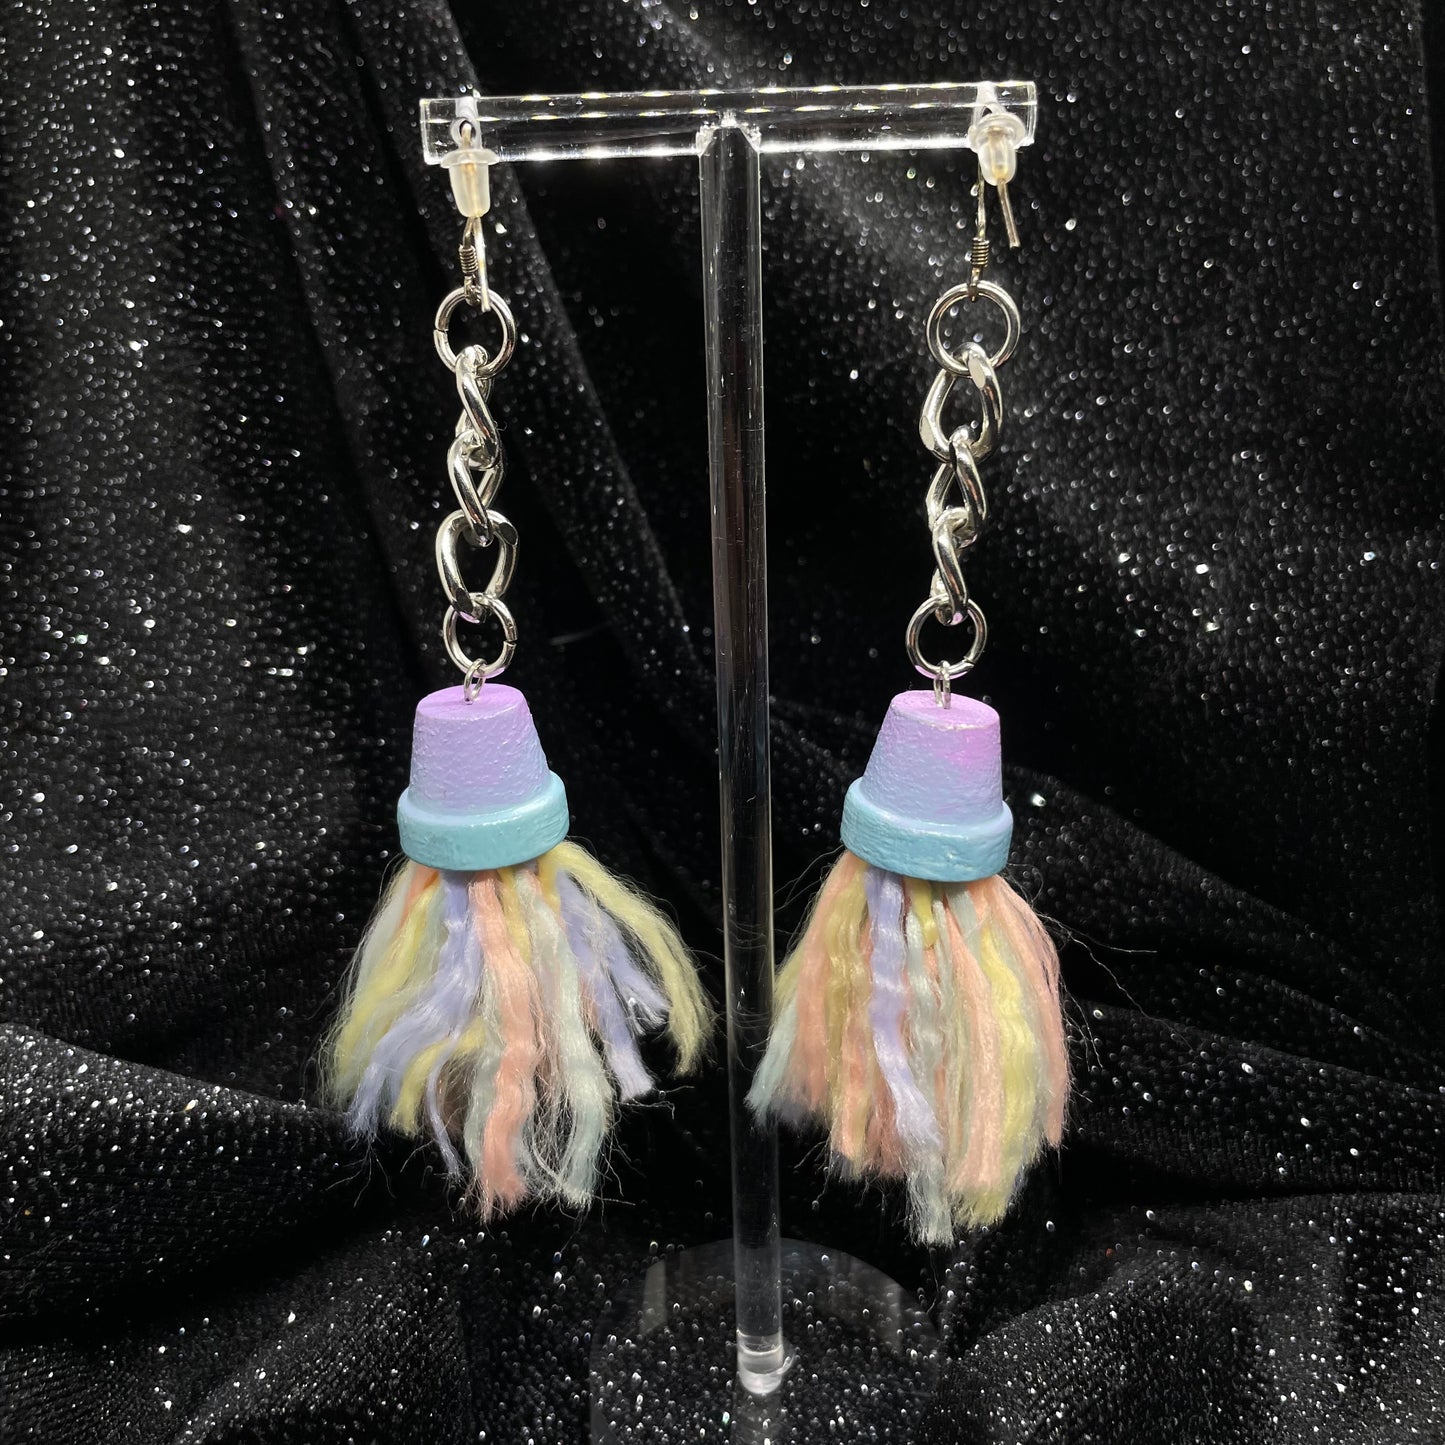 Pastel jelly earrings